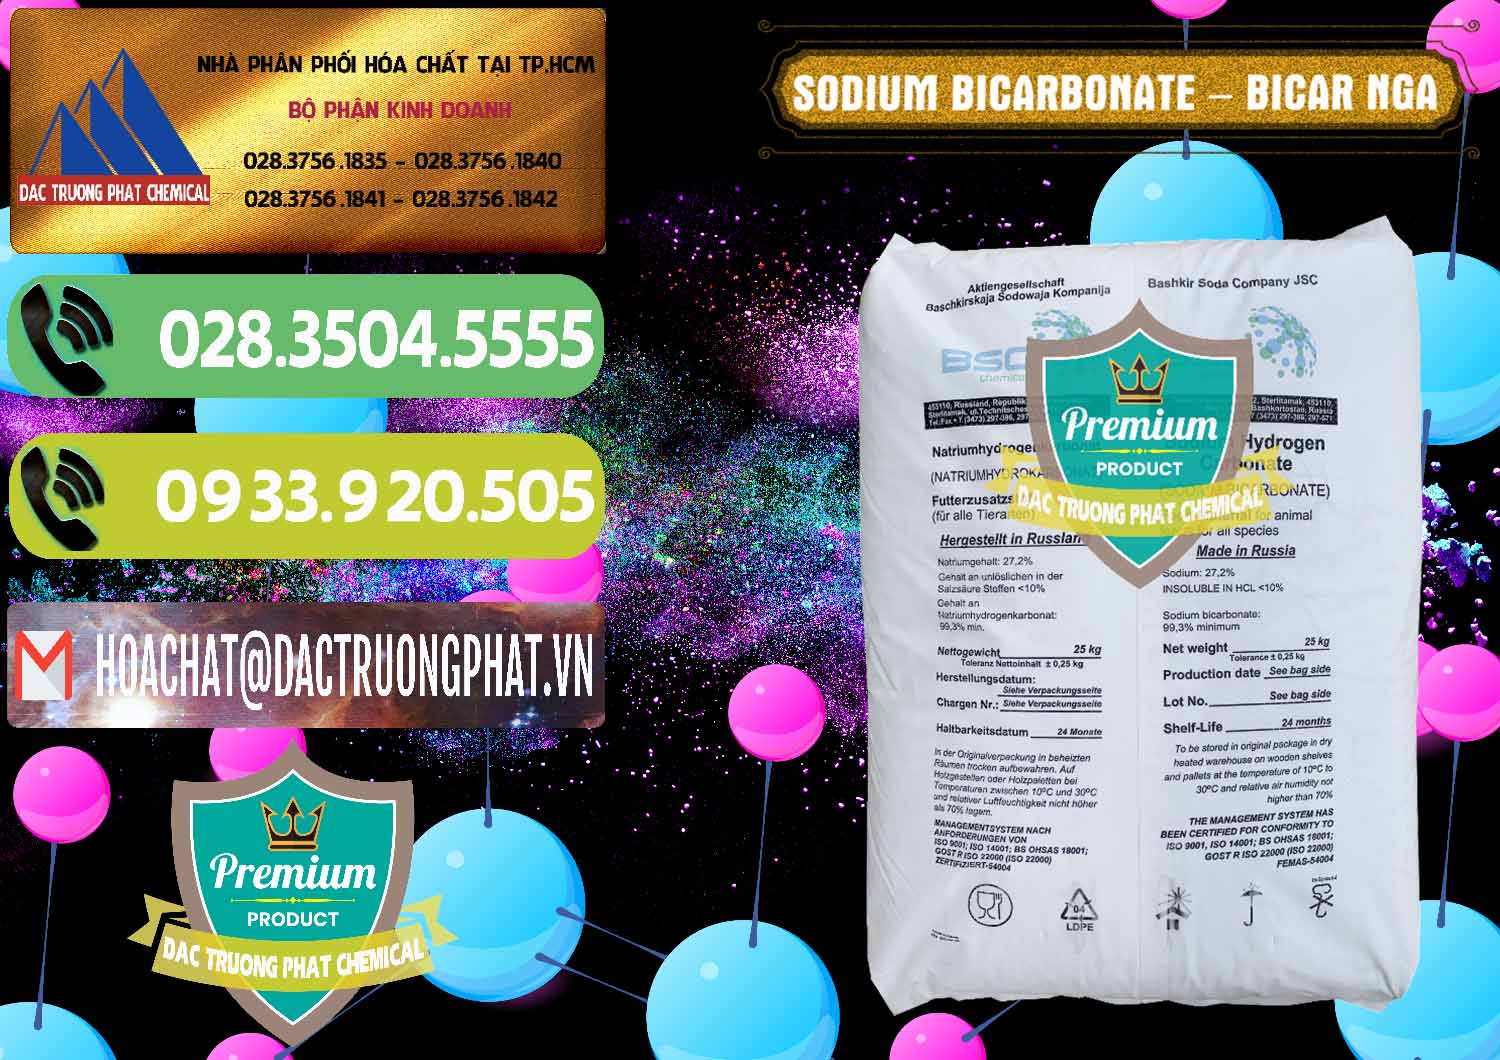 Nơi bán ( cung cấp ) Sodium Bicarbonate – Bicar NaHCO3 Nga Russia - 0425 - Đơn vị cung cấp - kinh doanh hóa chất tại TP.HCM - hoachatmientay.vn